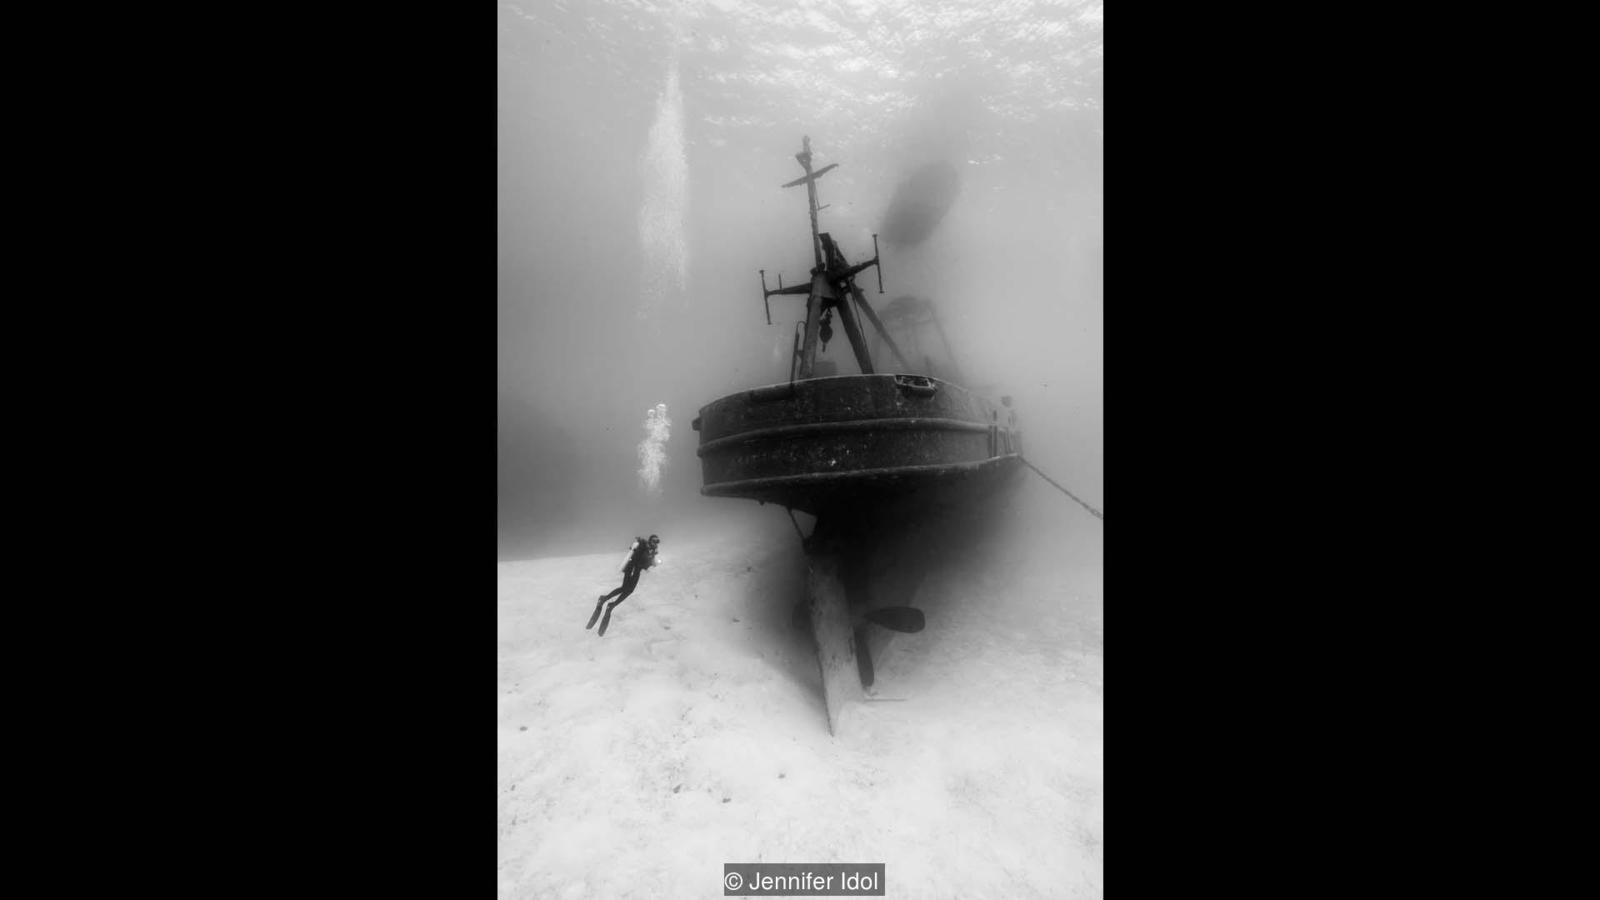 7 Temuan bangkai kapal & pesawat di dasar laut sejak Perang Dunia I